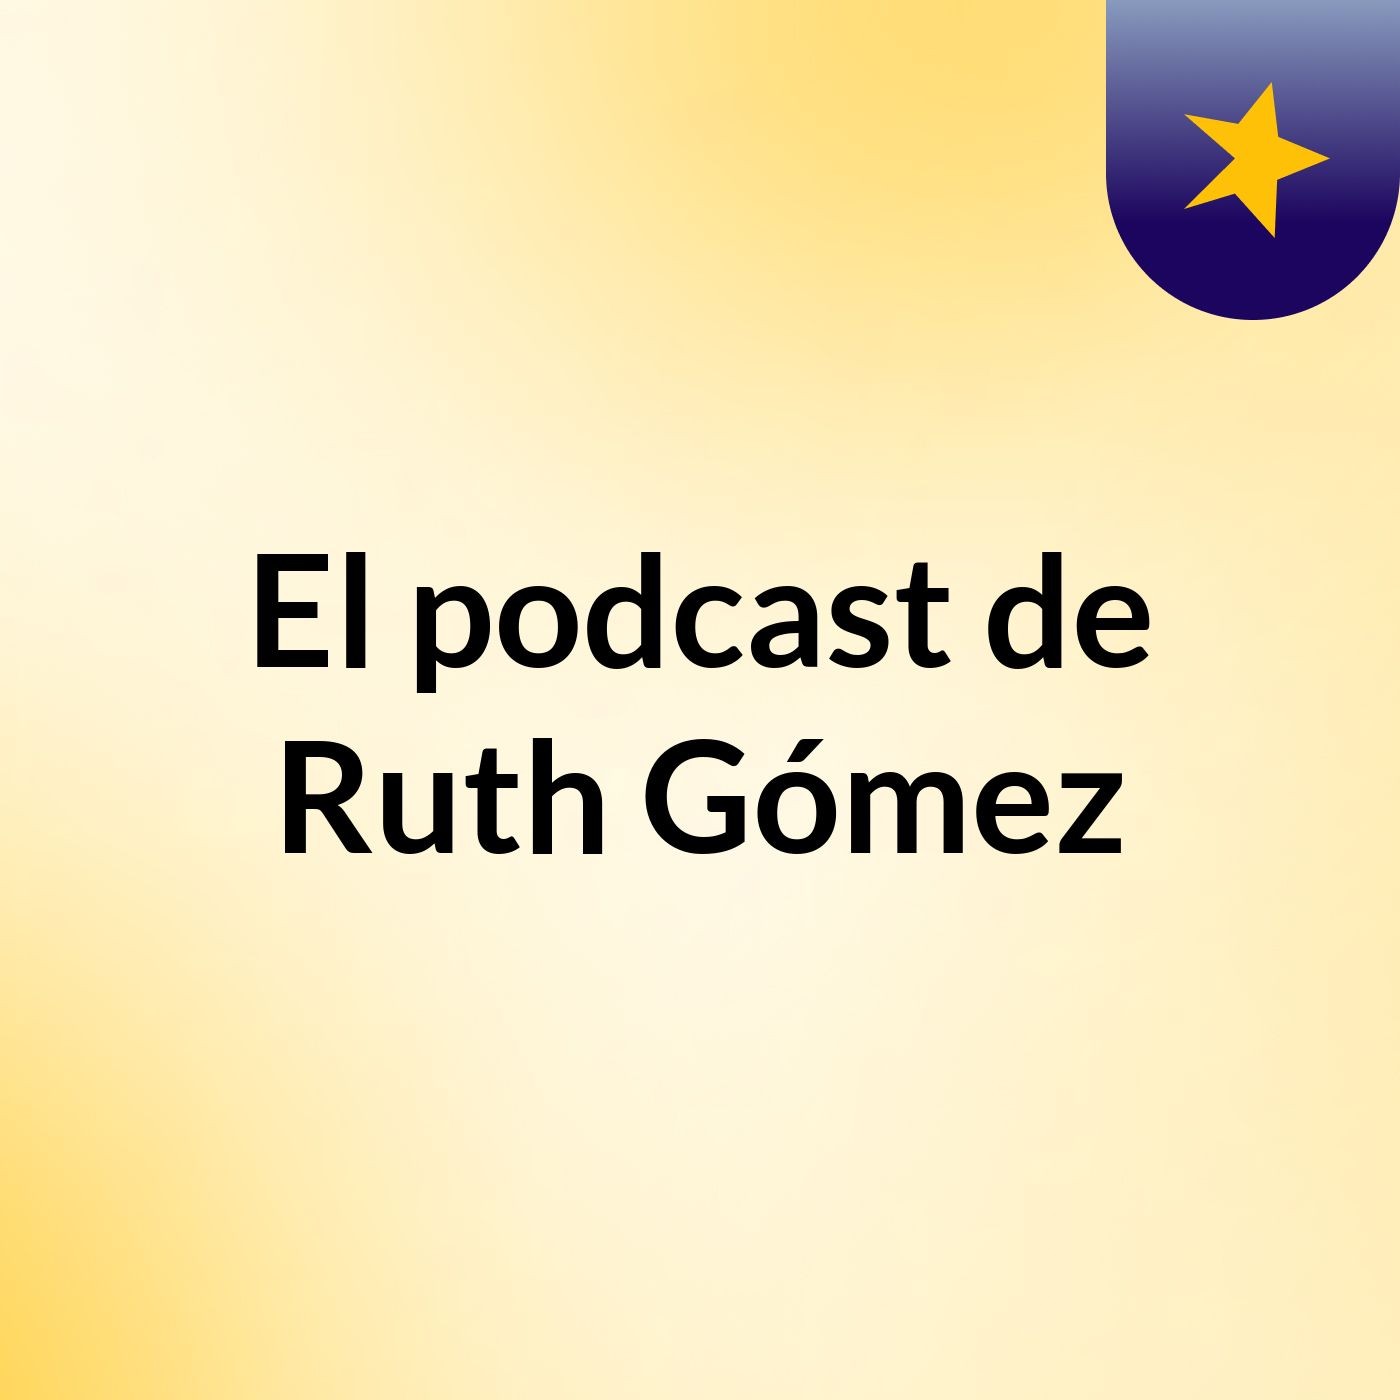 El podcast de Ruth Gómez